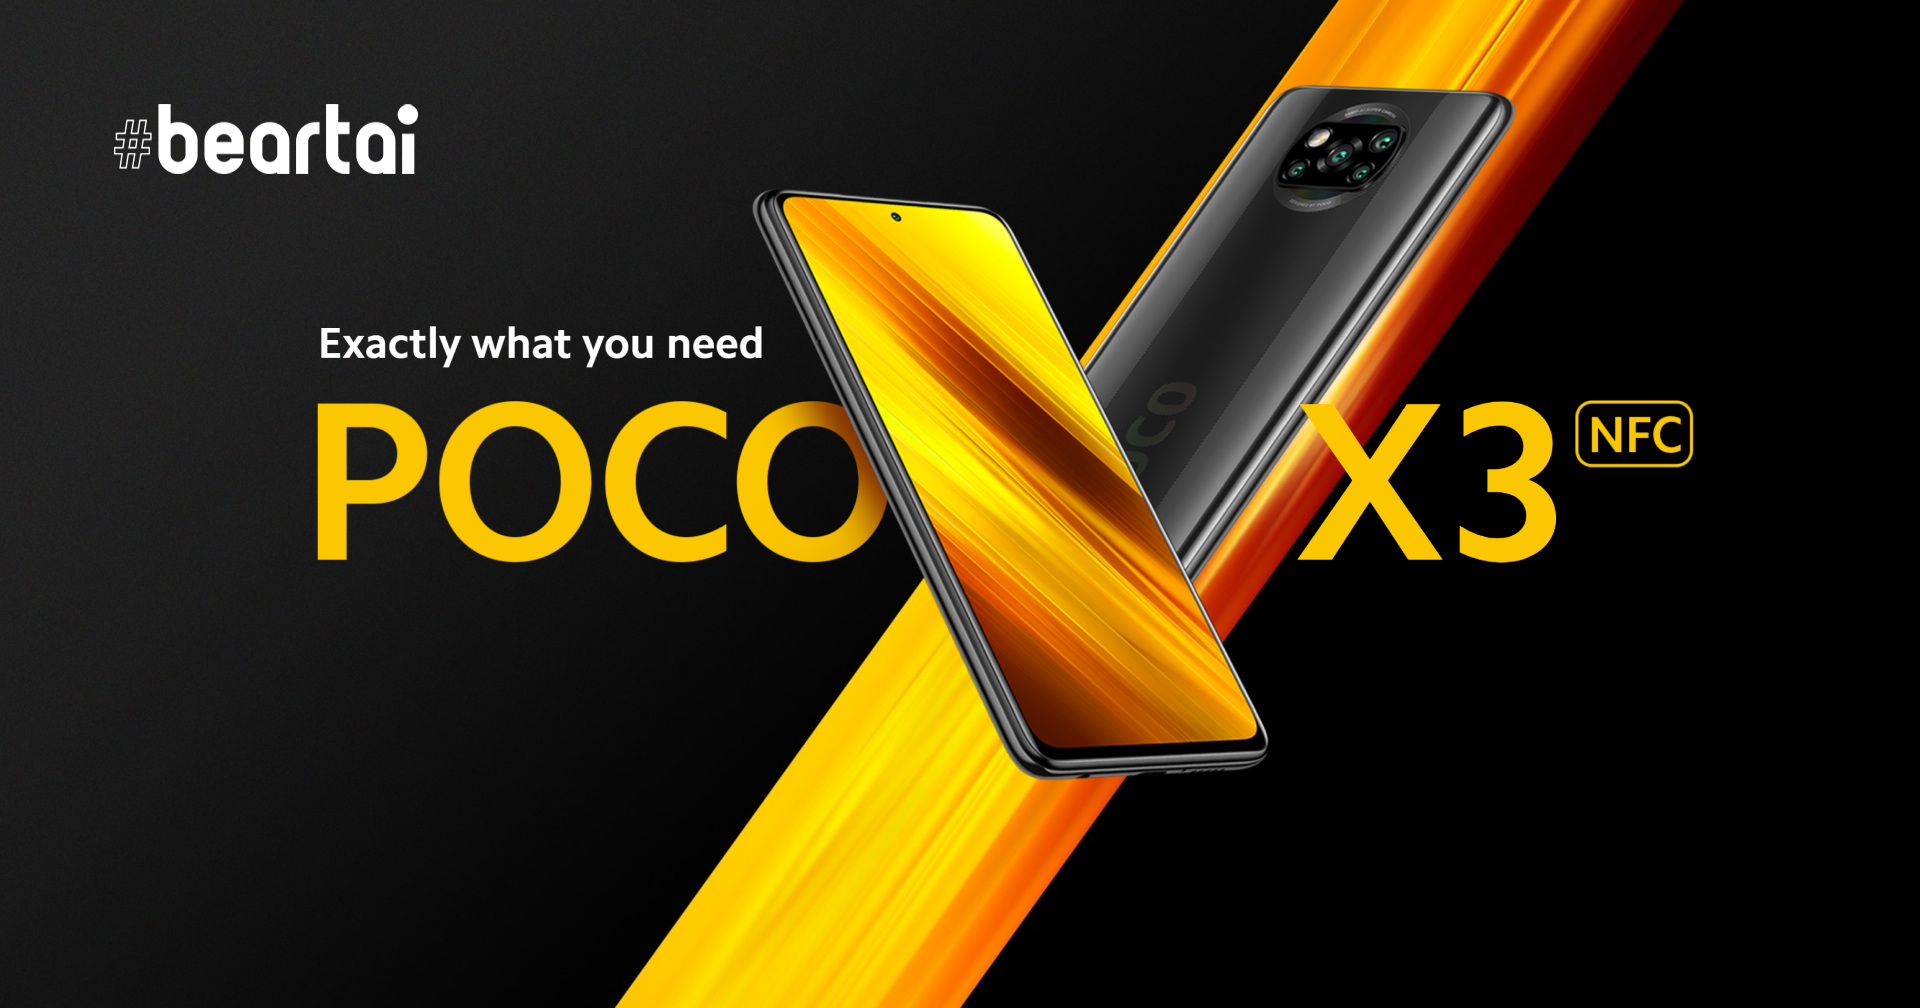 เปิดตัว POCO X3 NFC สมาร์ตโฟนระดับกลาง สเปกแรง ราคาสบายกระเป๋า